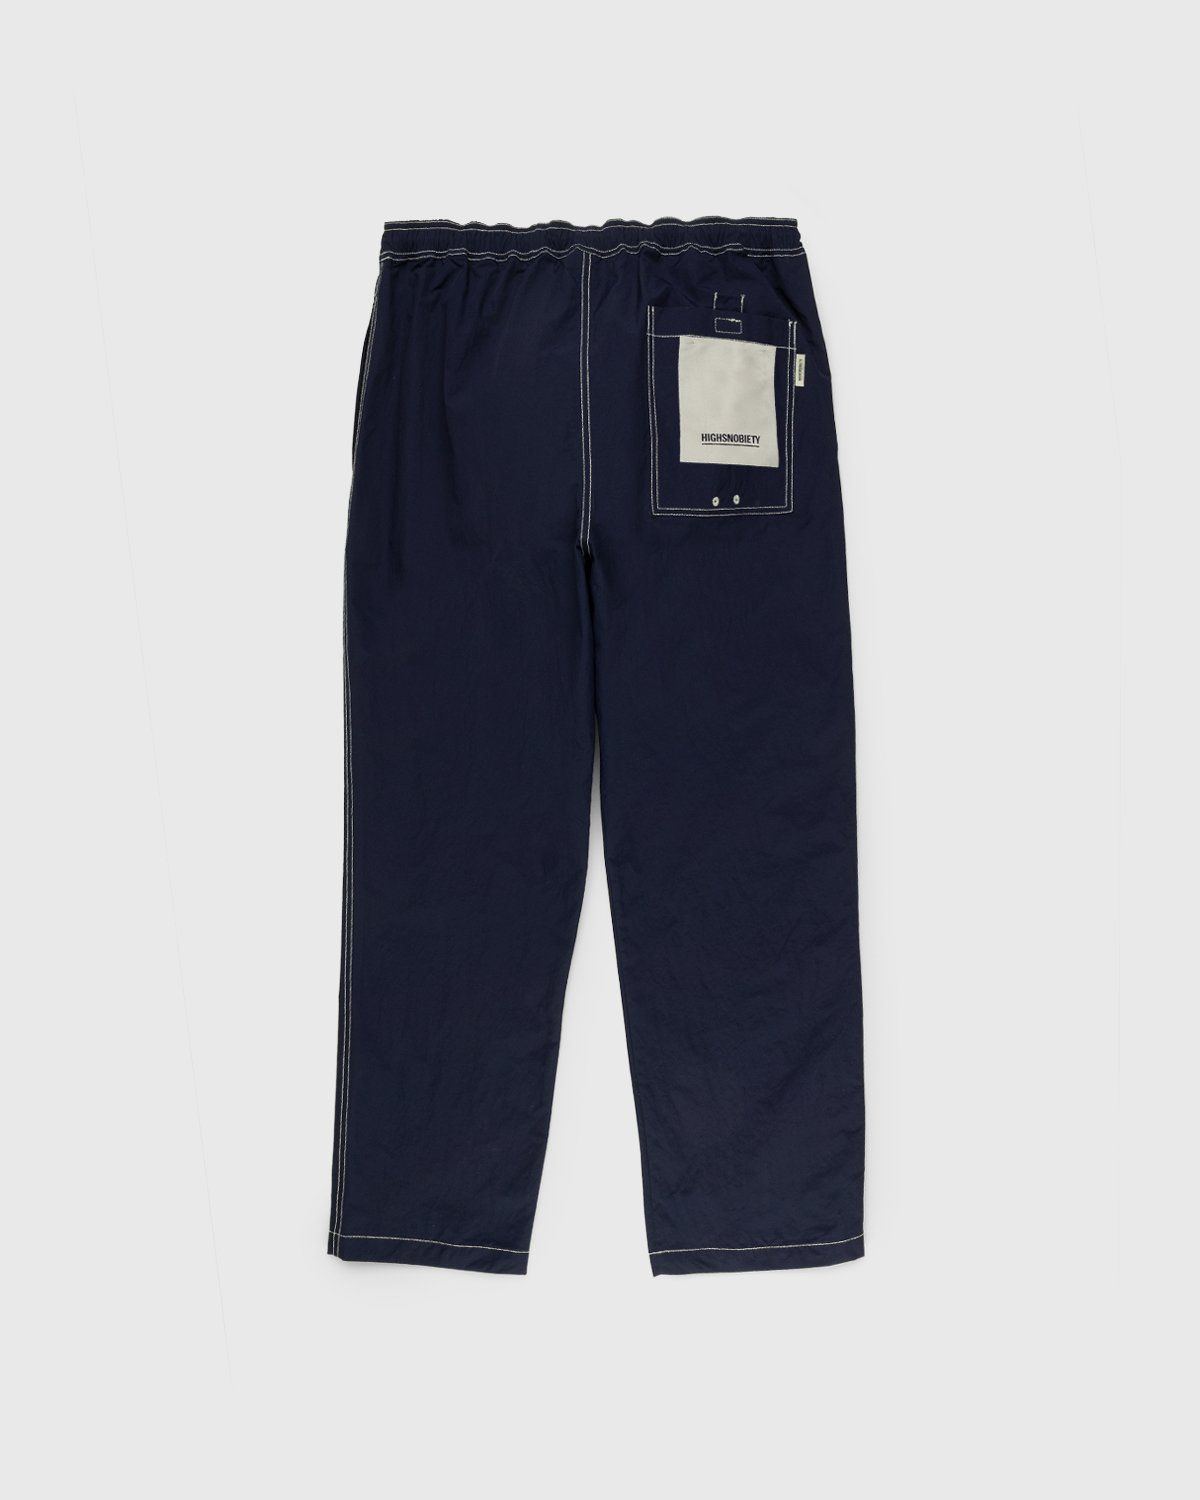 Highsnobiety – Contrast Brushed Nylon Elastic Pants Navy - Pants - Blue - Image 2